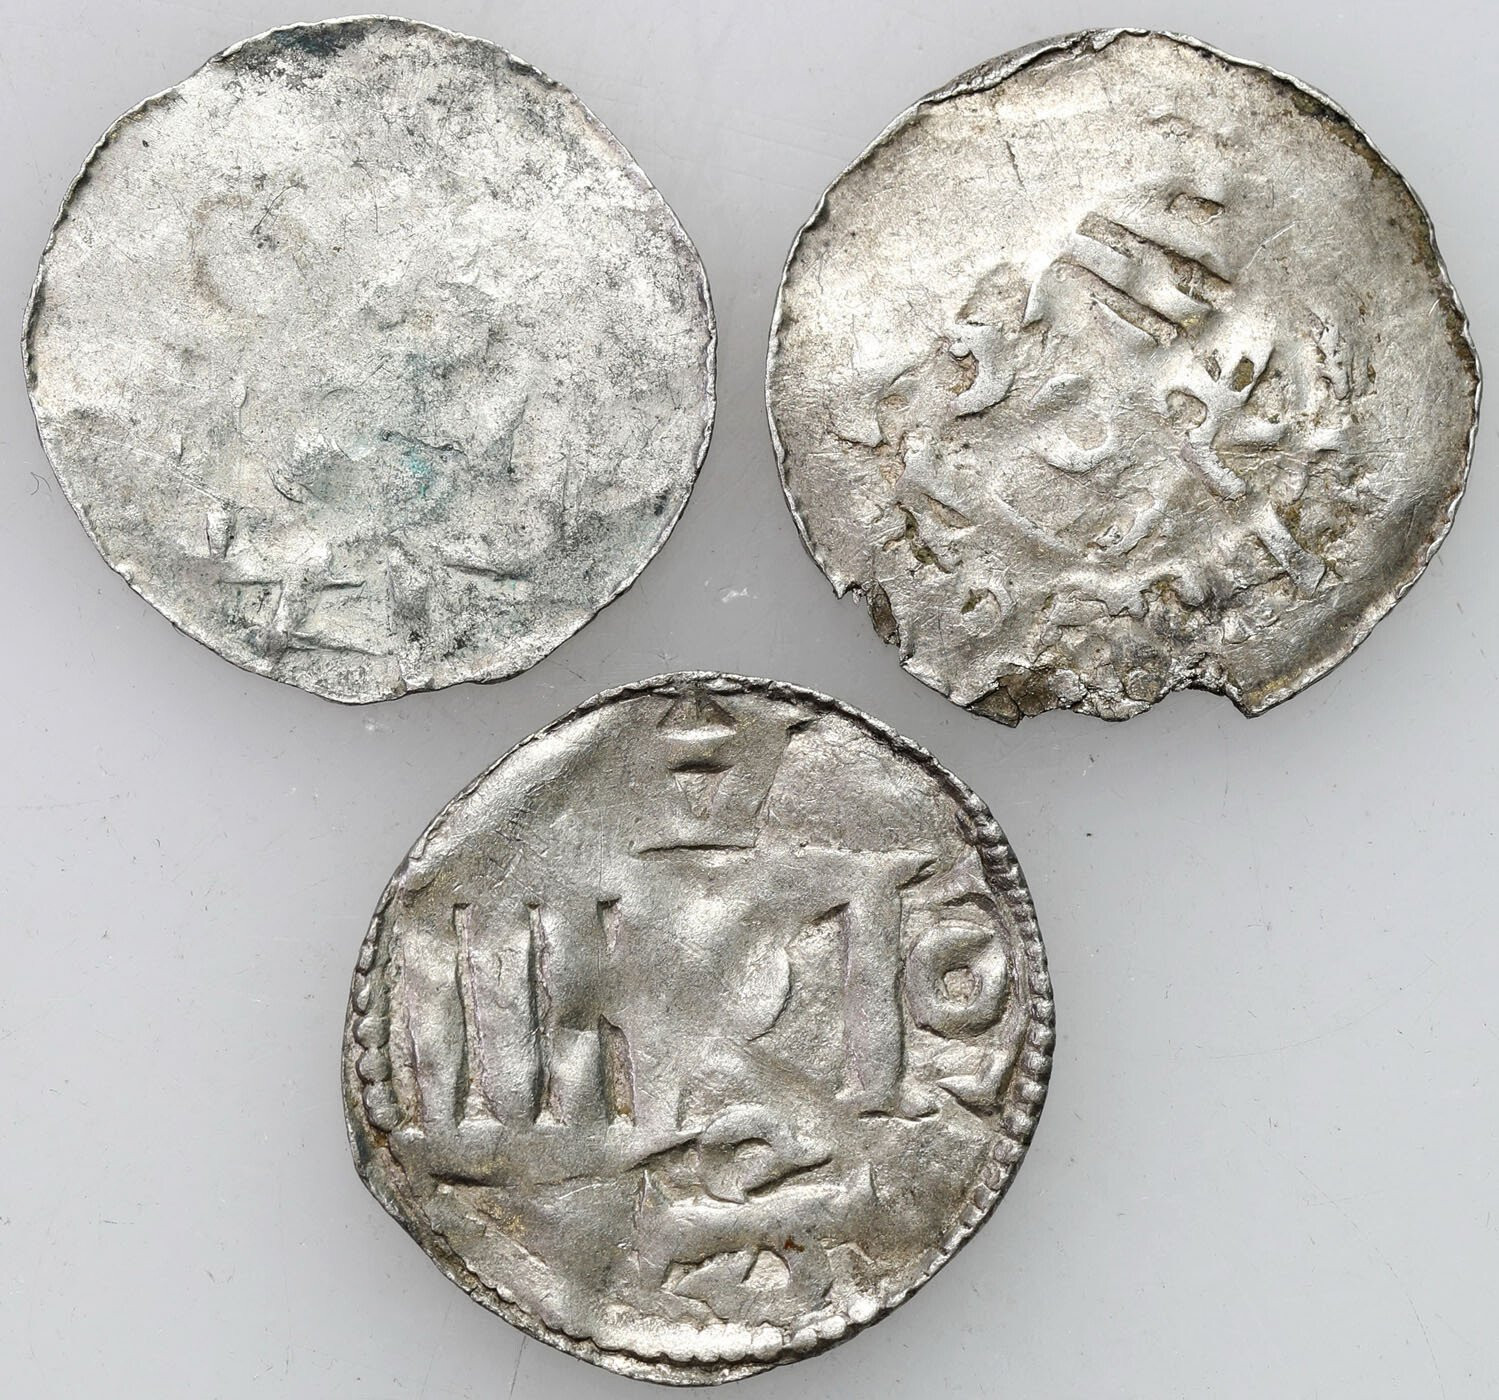 Niemcy, Dolna Lotaryngia - Kolonia, X/XI wiek. Denar typu kolońskiego i ich naśladownictwa, zestaw 3 monet